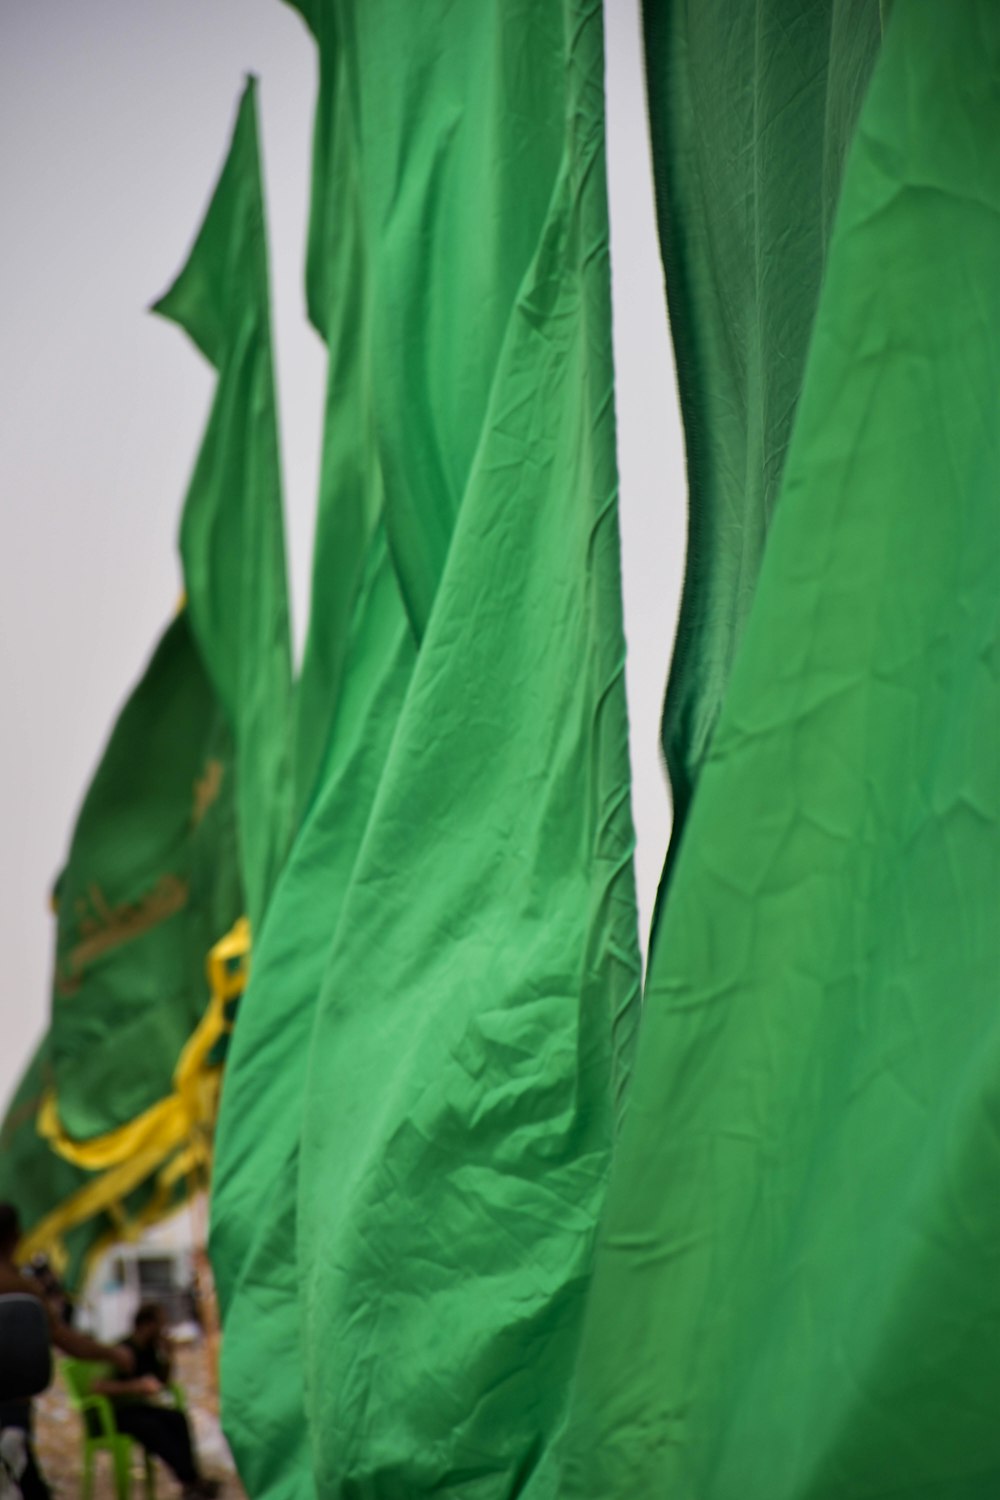 Um grupo de bandeiras verdes está ao vento